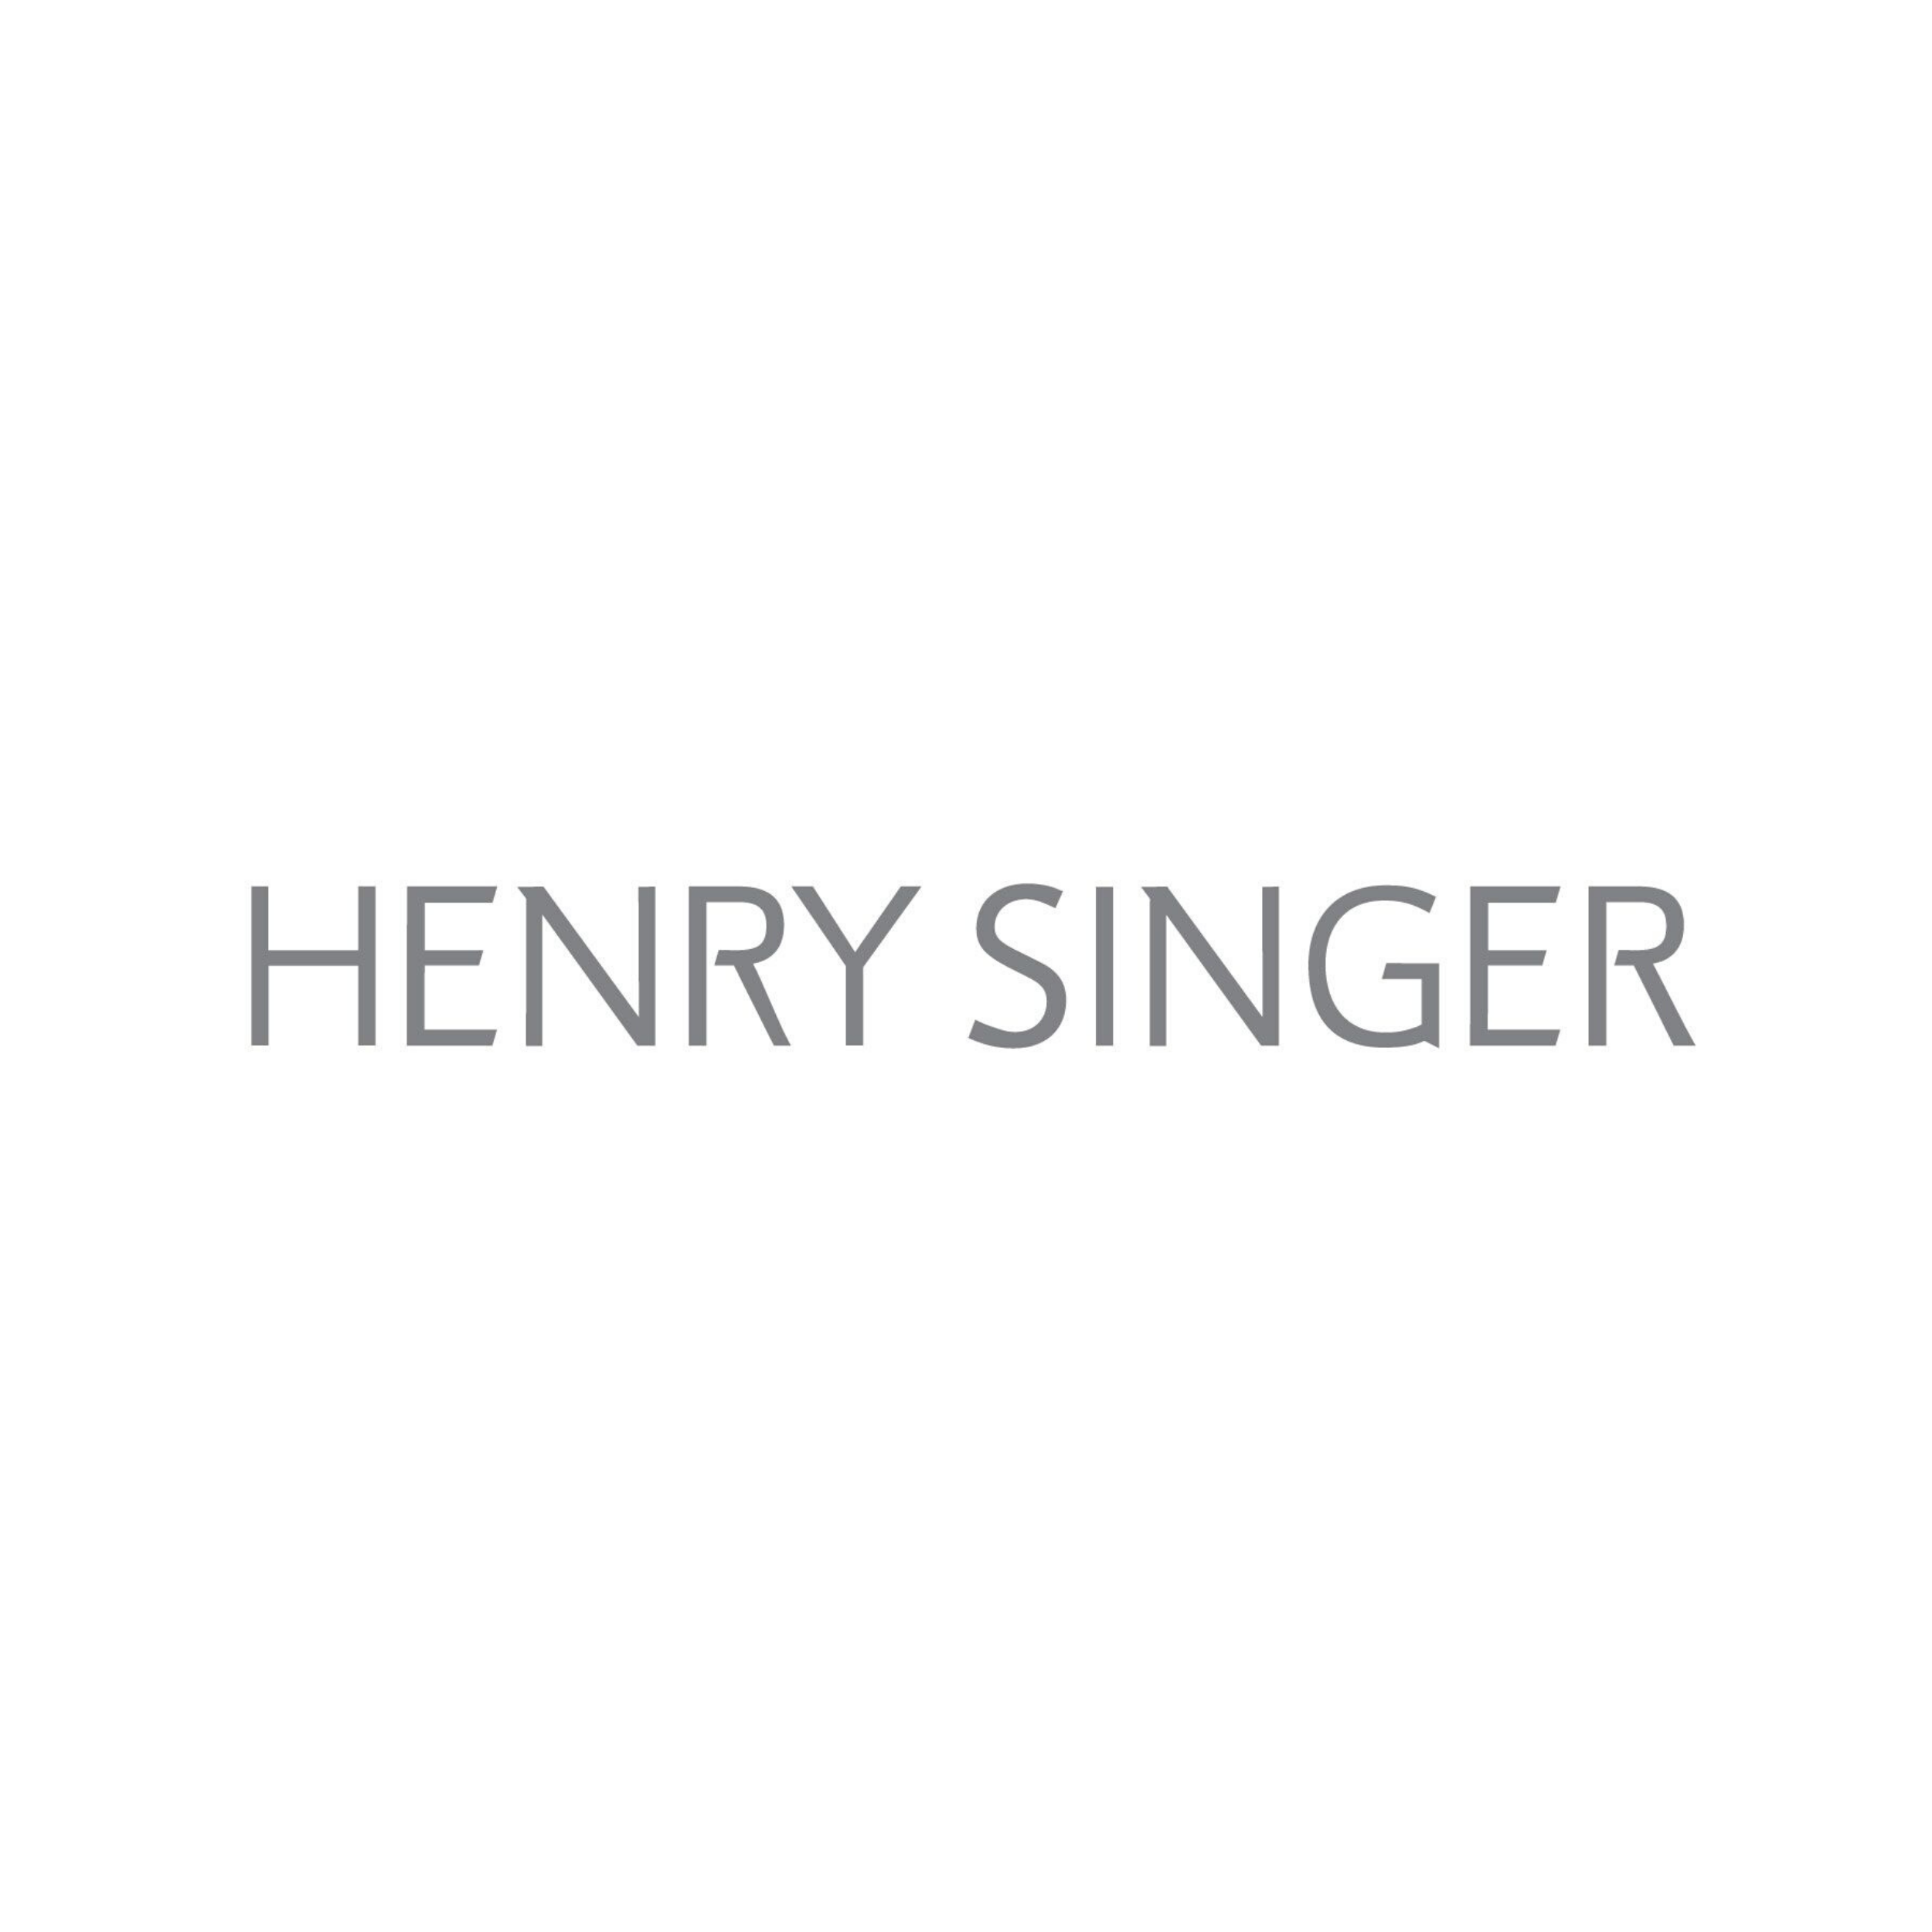 henry singer logo